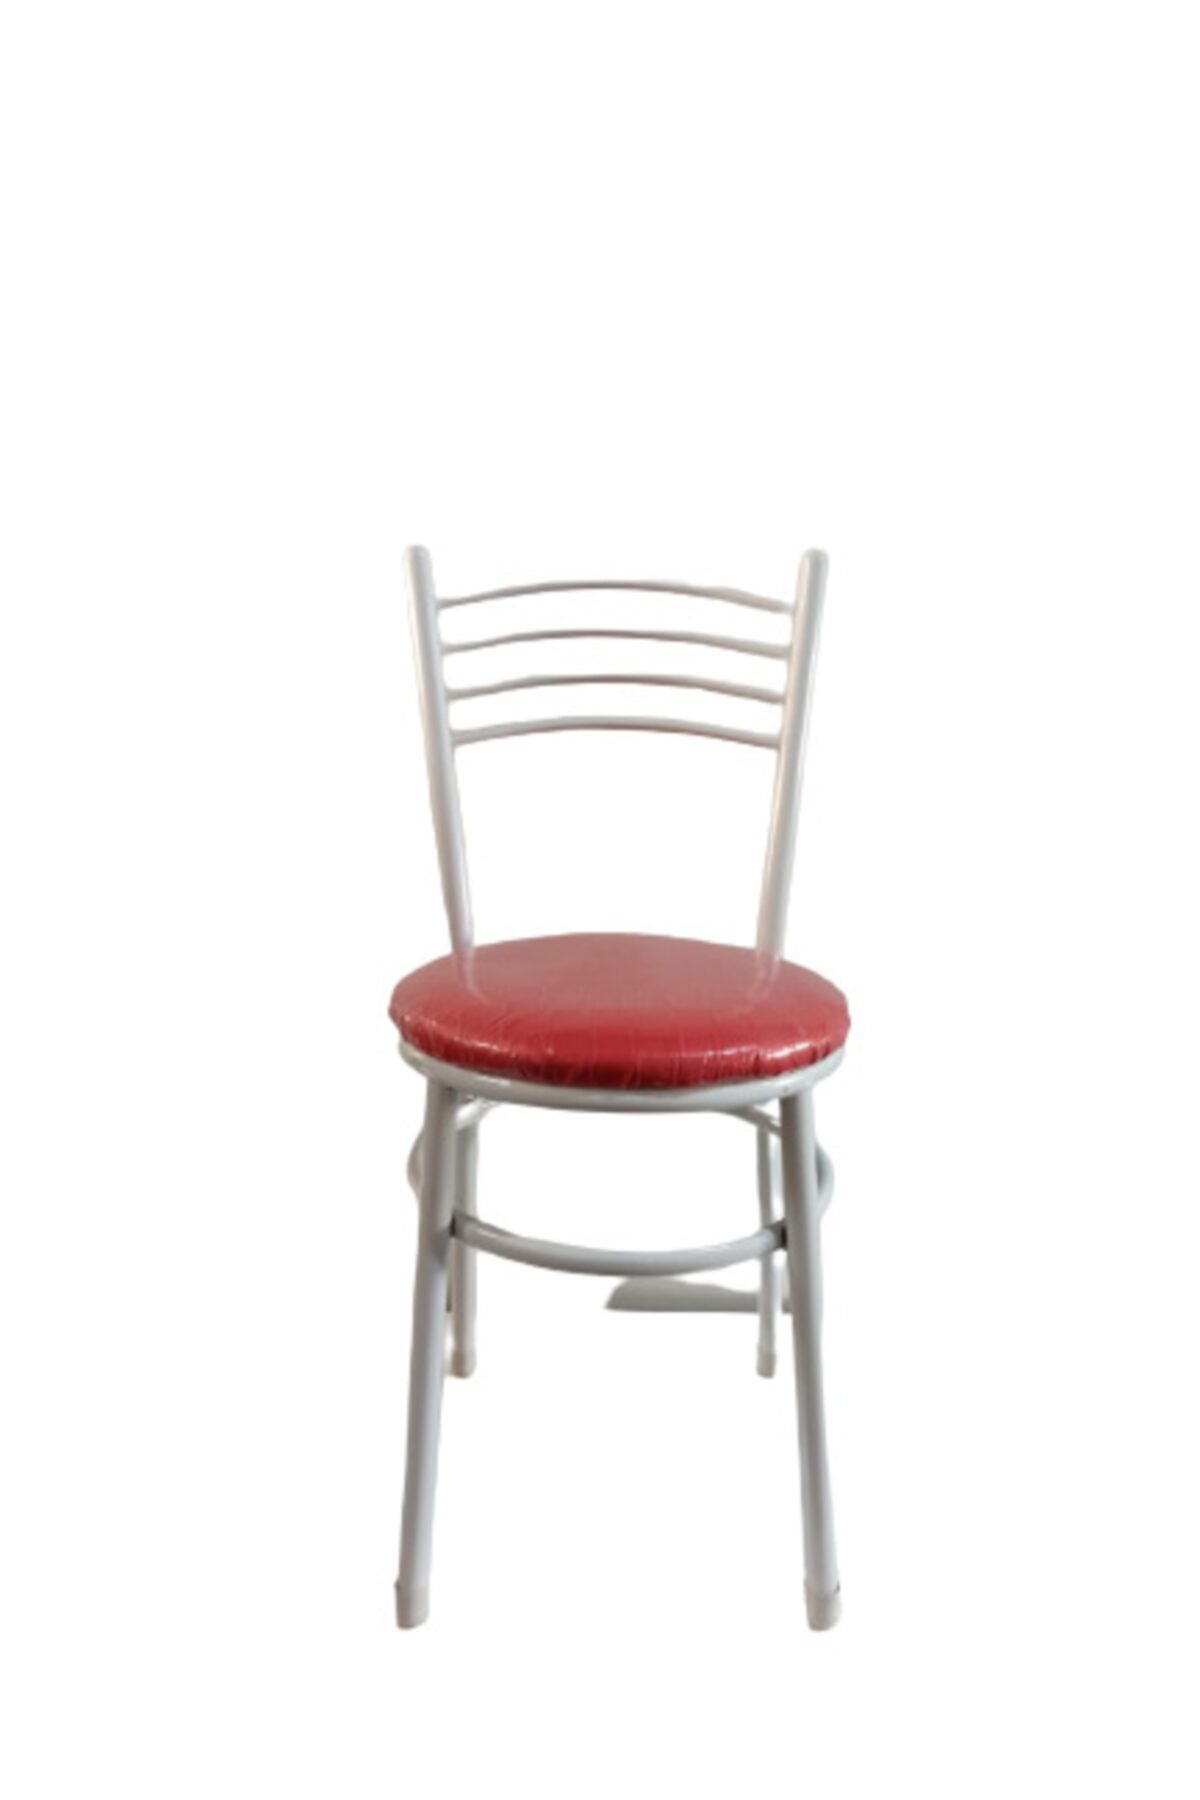 yılmaz masacılık Tatlı 3 Adet Kırmızı Mutfak Bahçe Sandalyesi